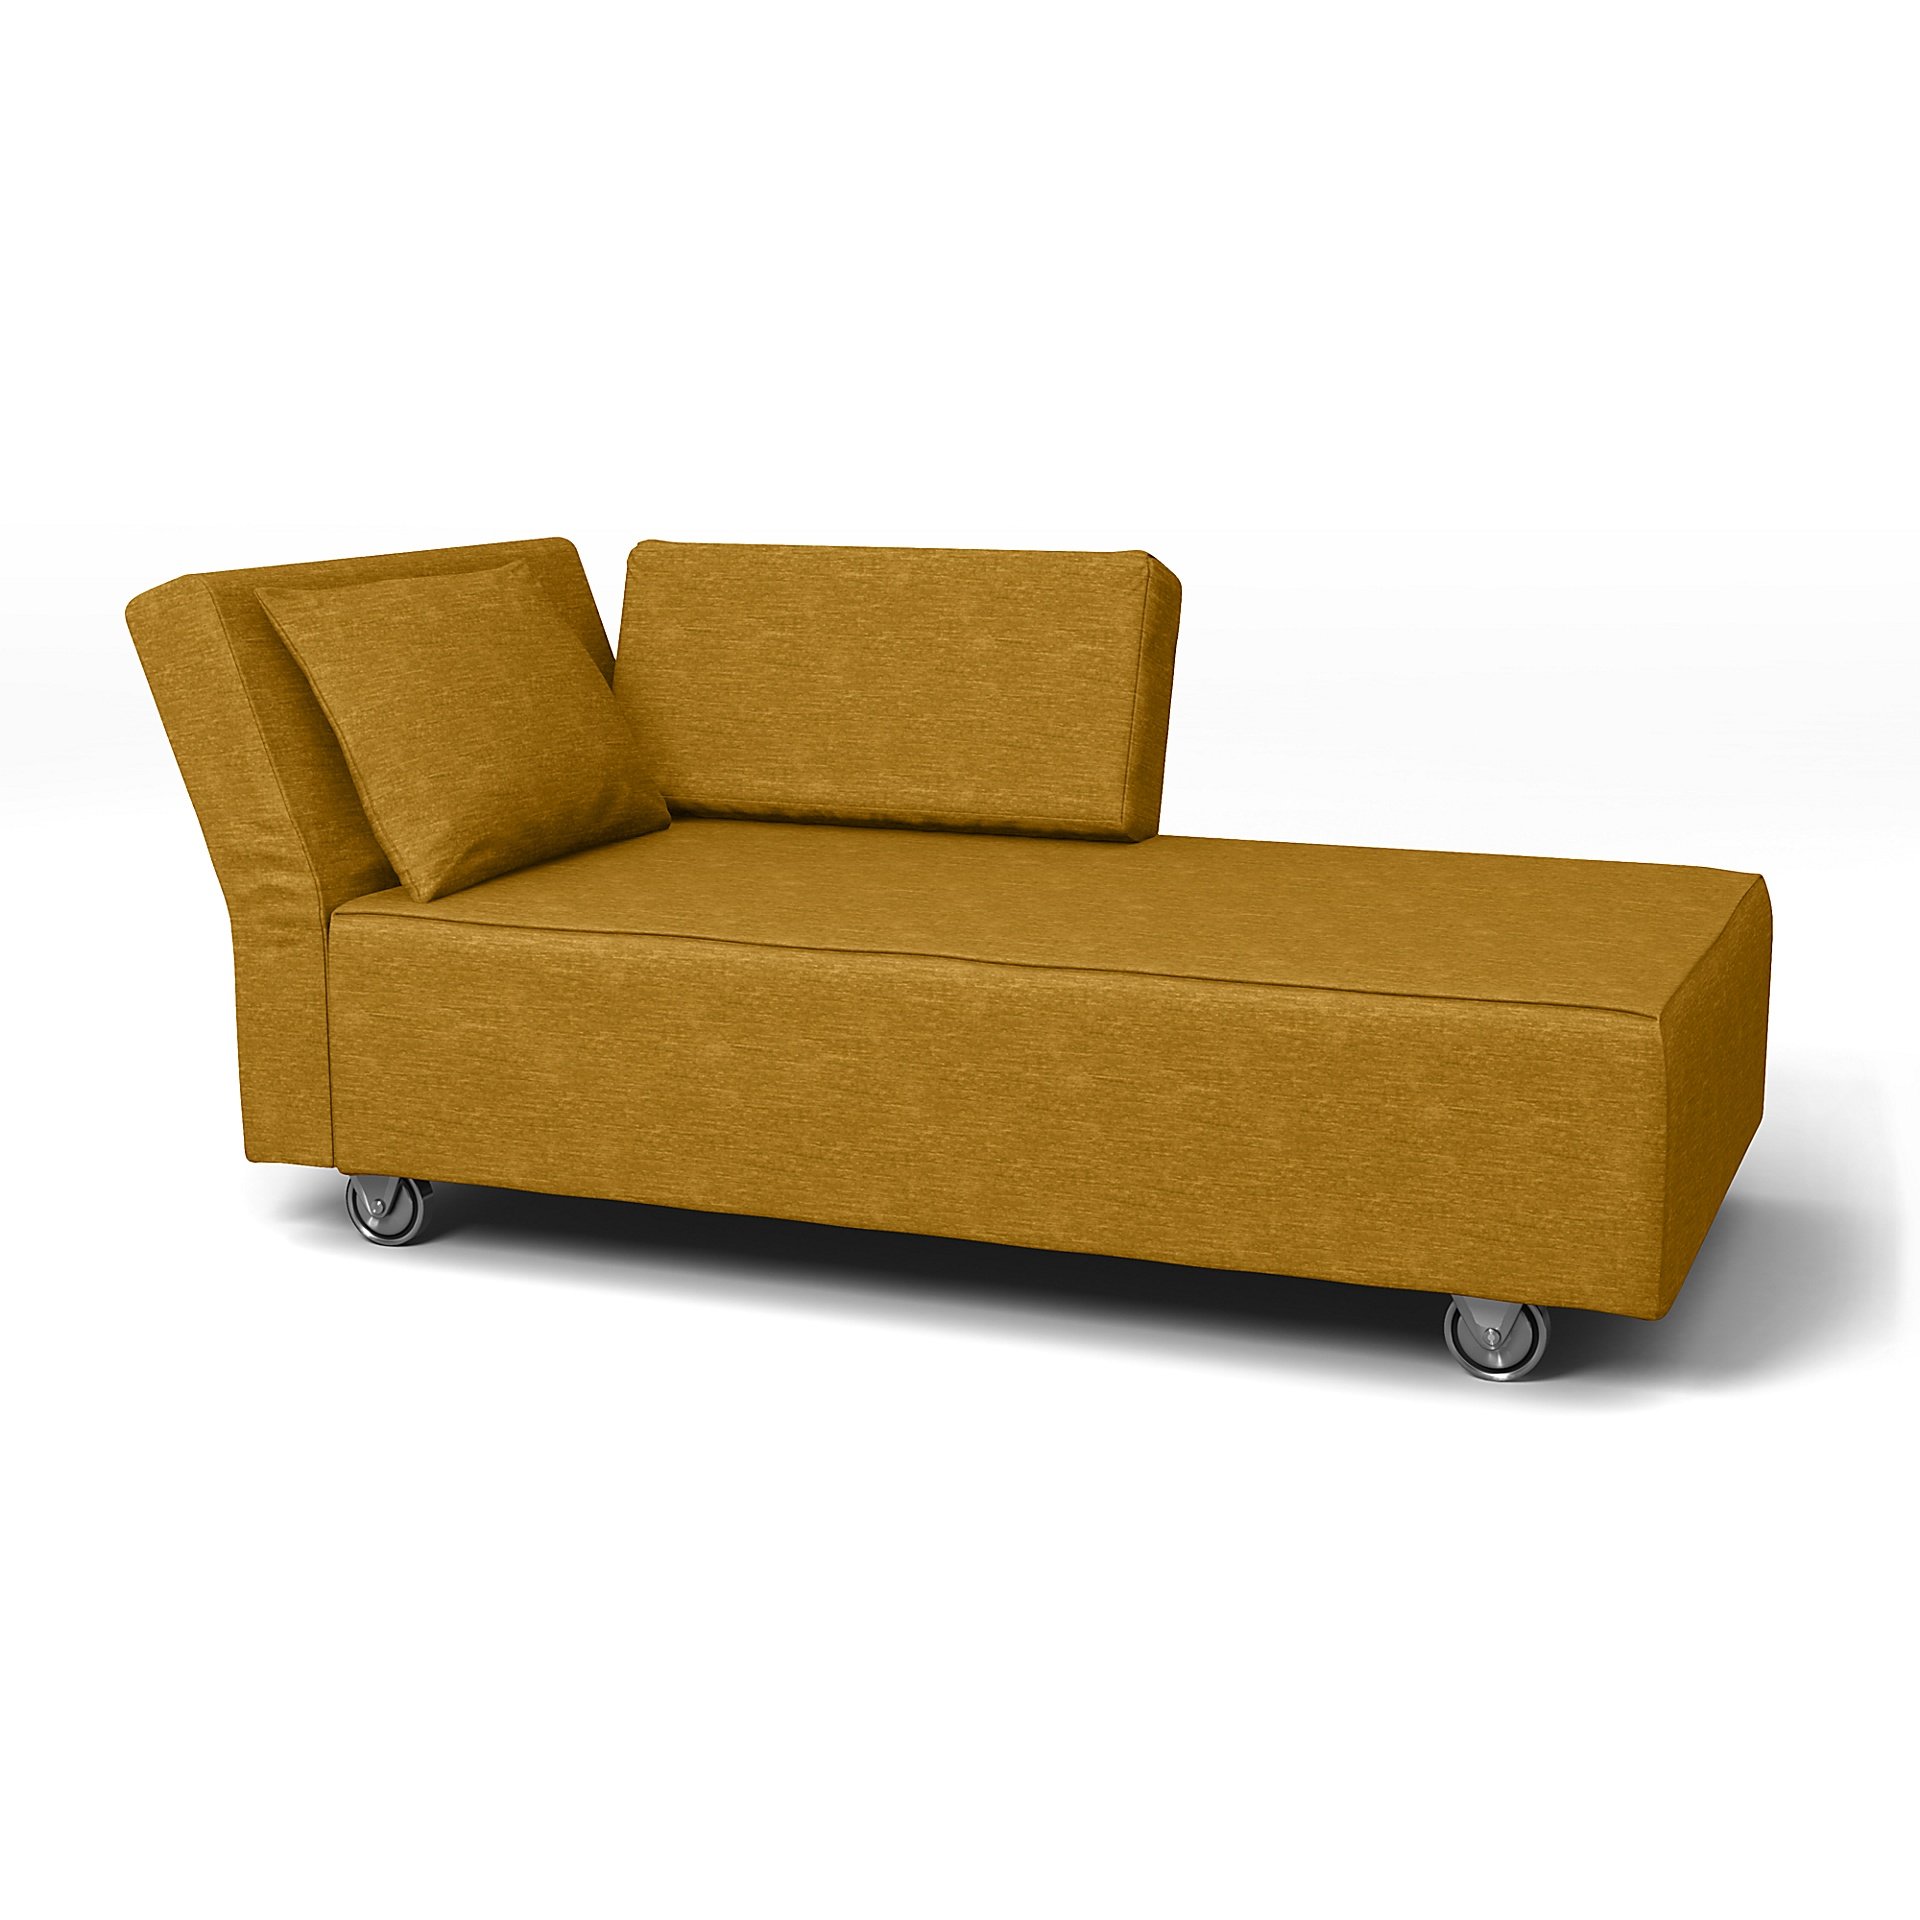 IKEA - Falsterbo Chaise with Left Armrest Cover, Tumeric, Velvet - Bemz